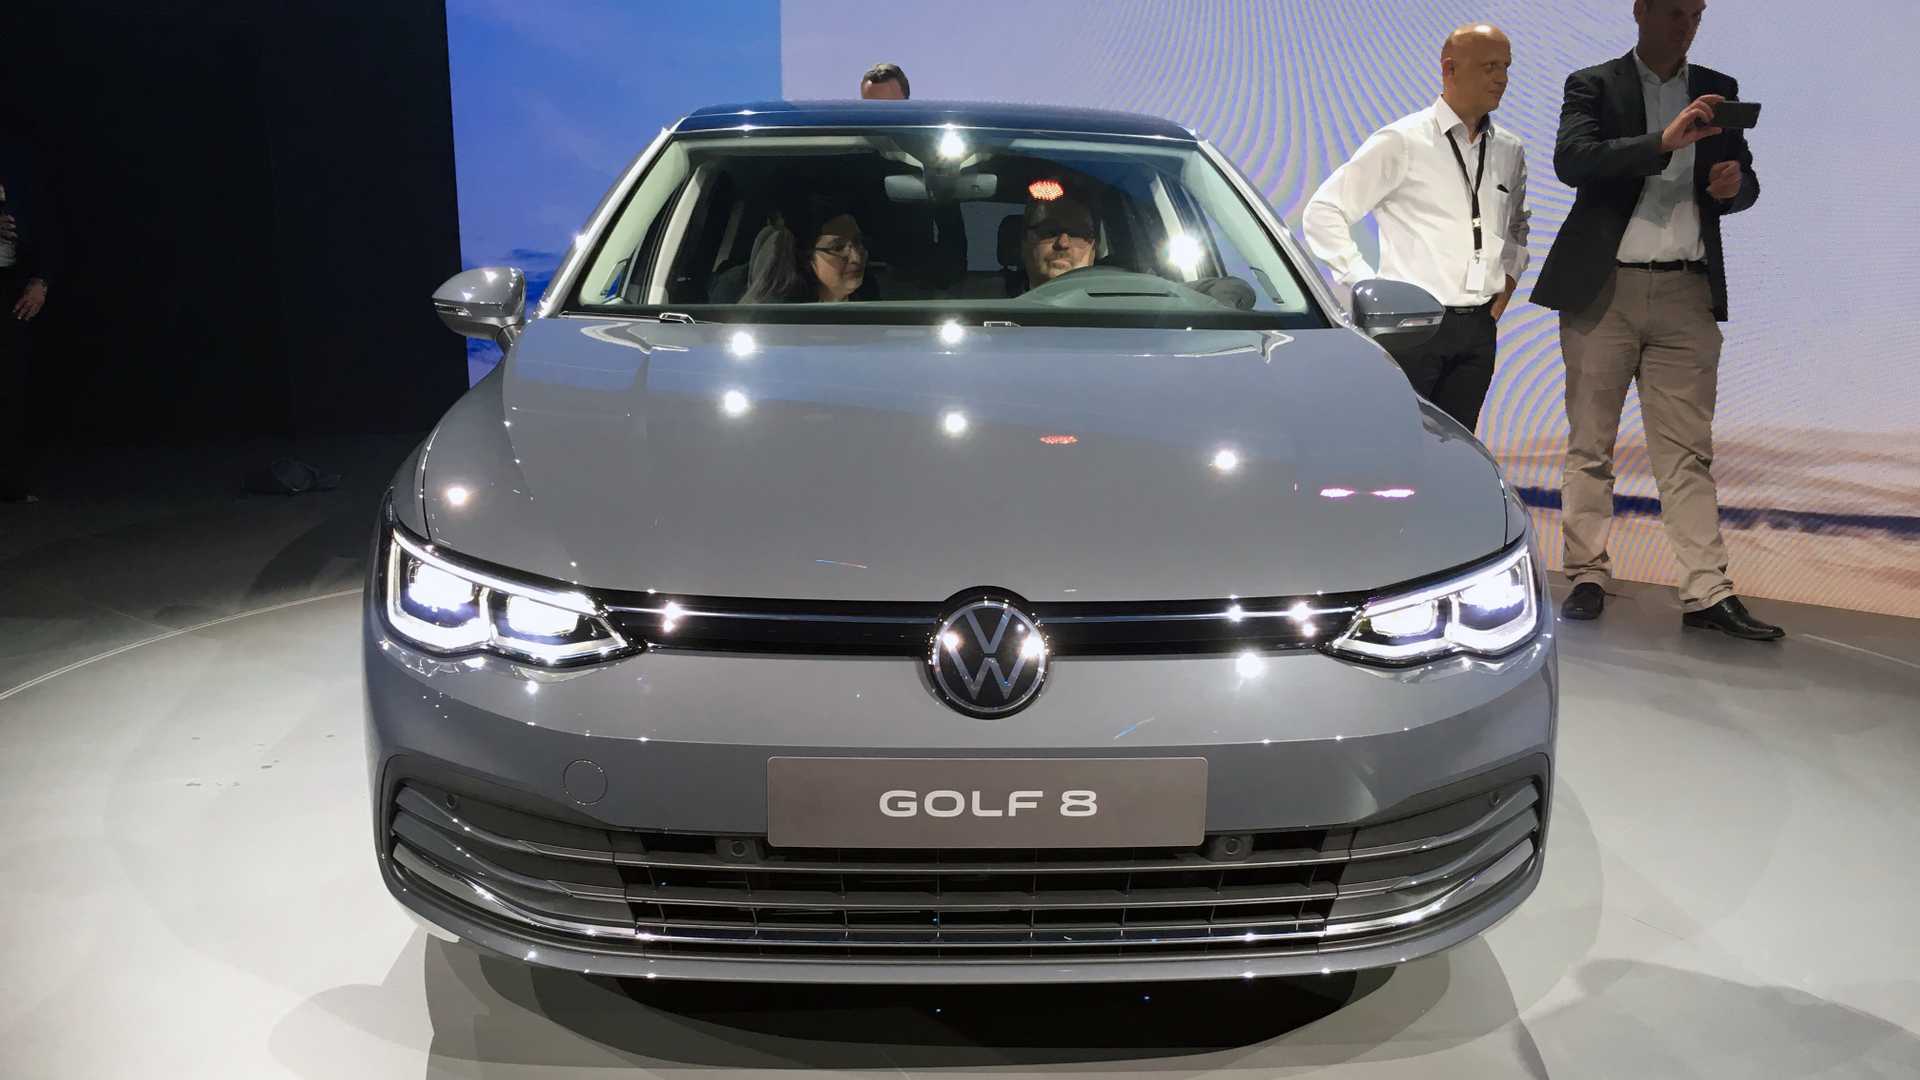 Фольксваген гольф 2020 цены, комплектации в новом кузове, фото, видео теста